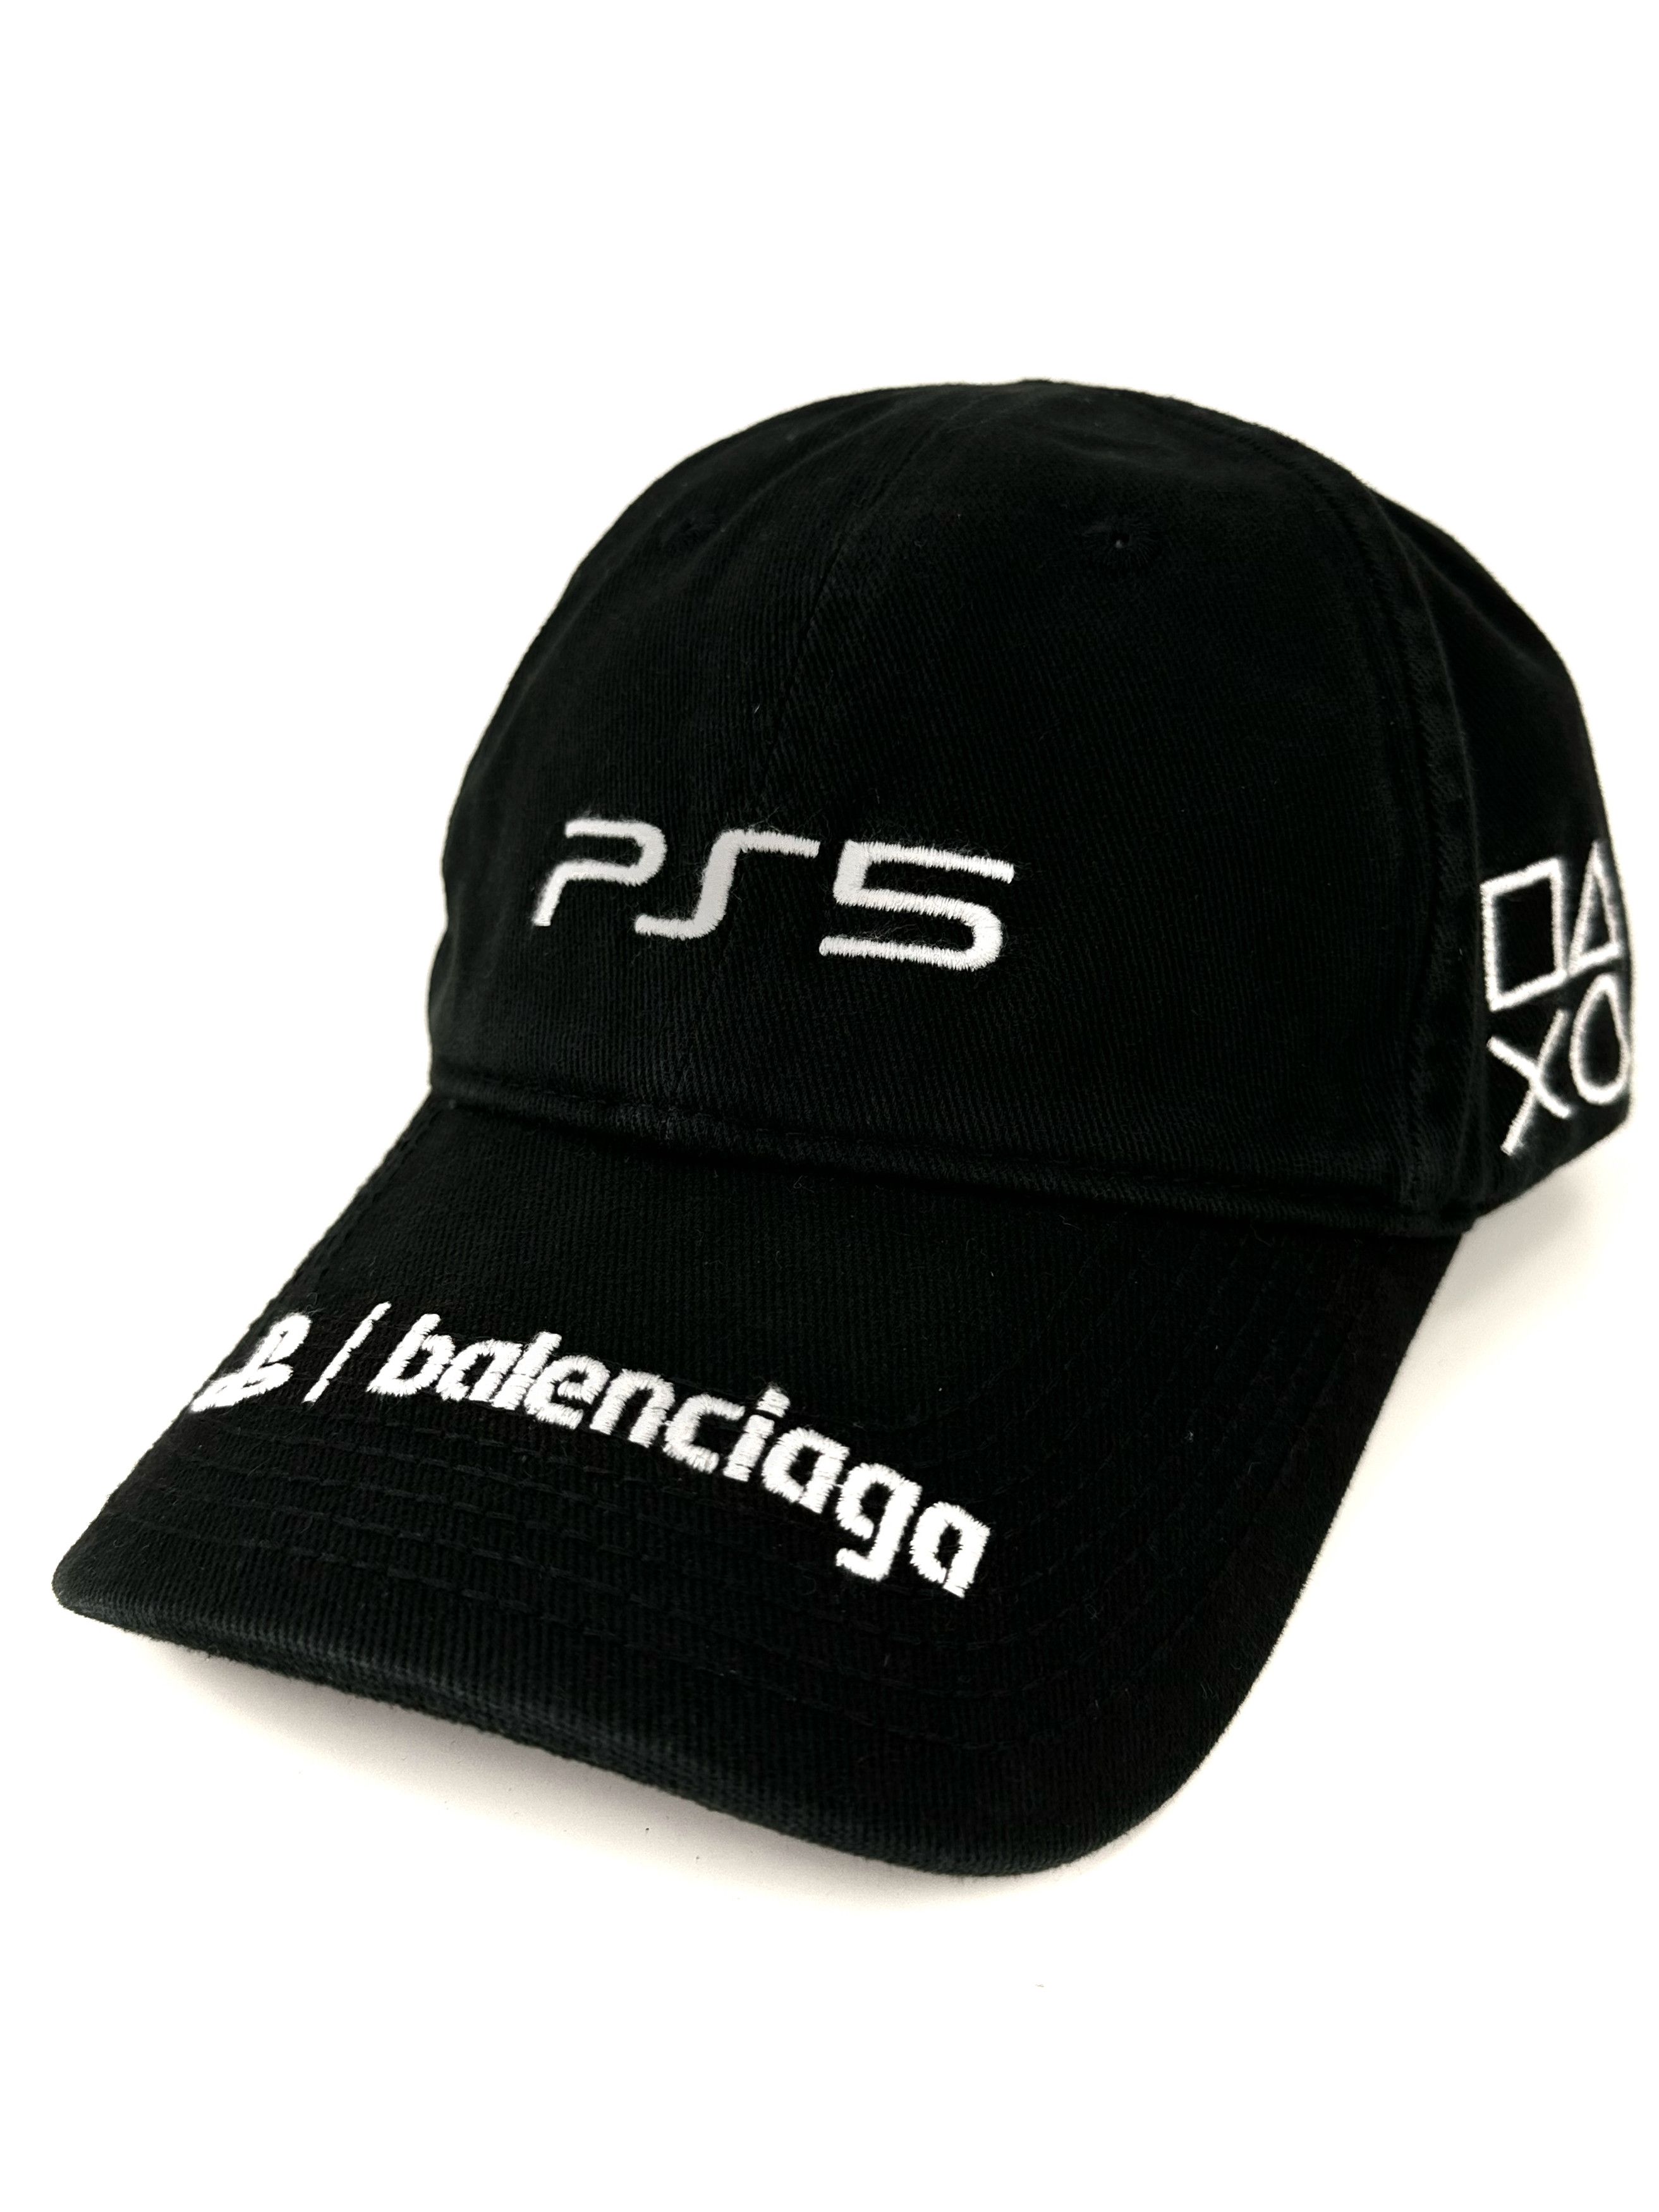 Balenciaga Balenciaga PS5 Center Logo Baseball Cap Black Hat One Size ...